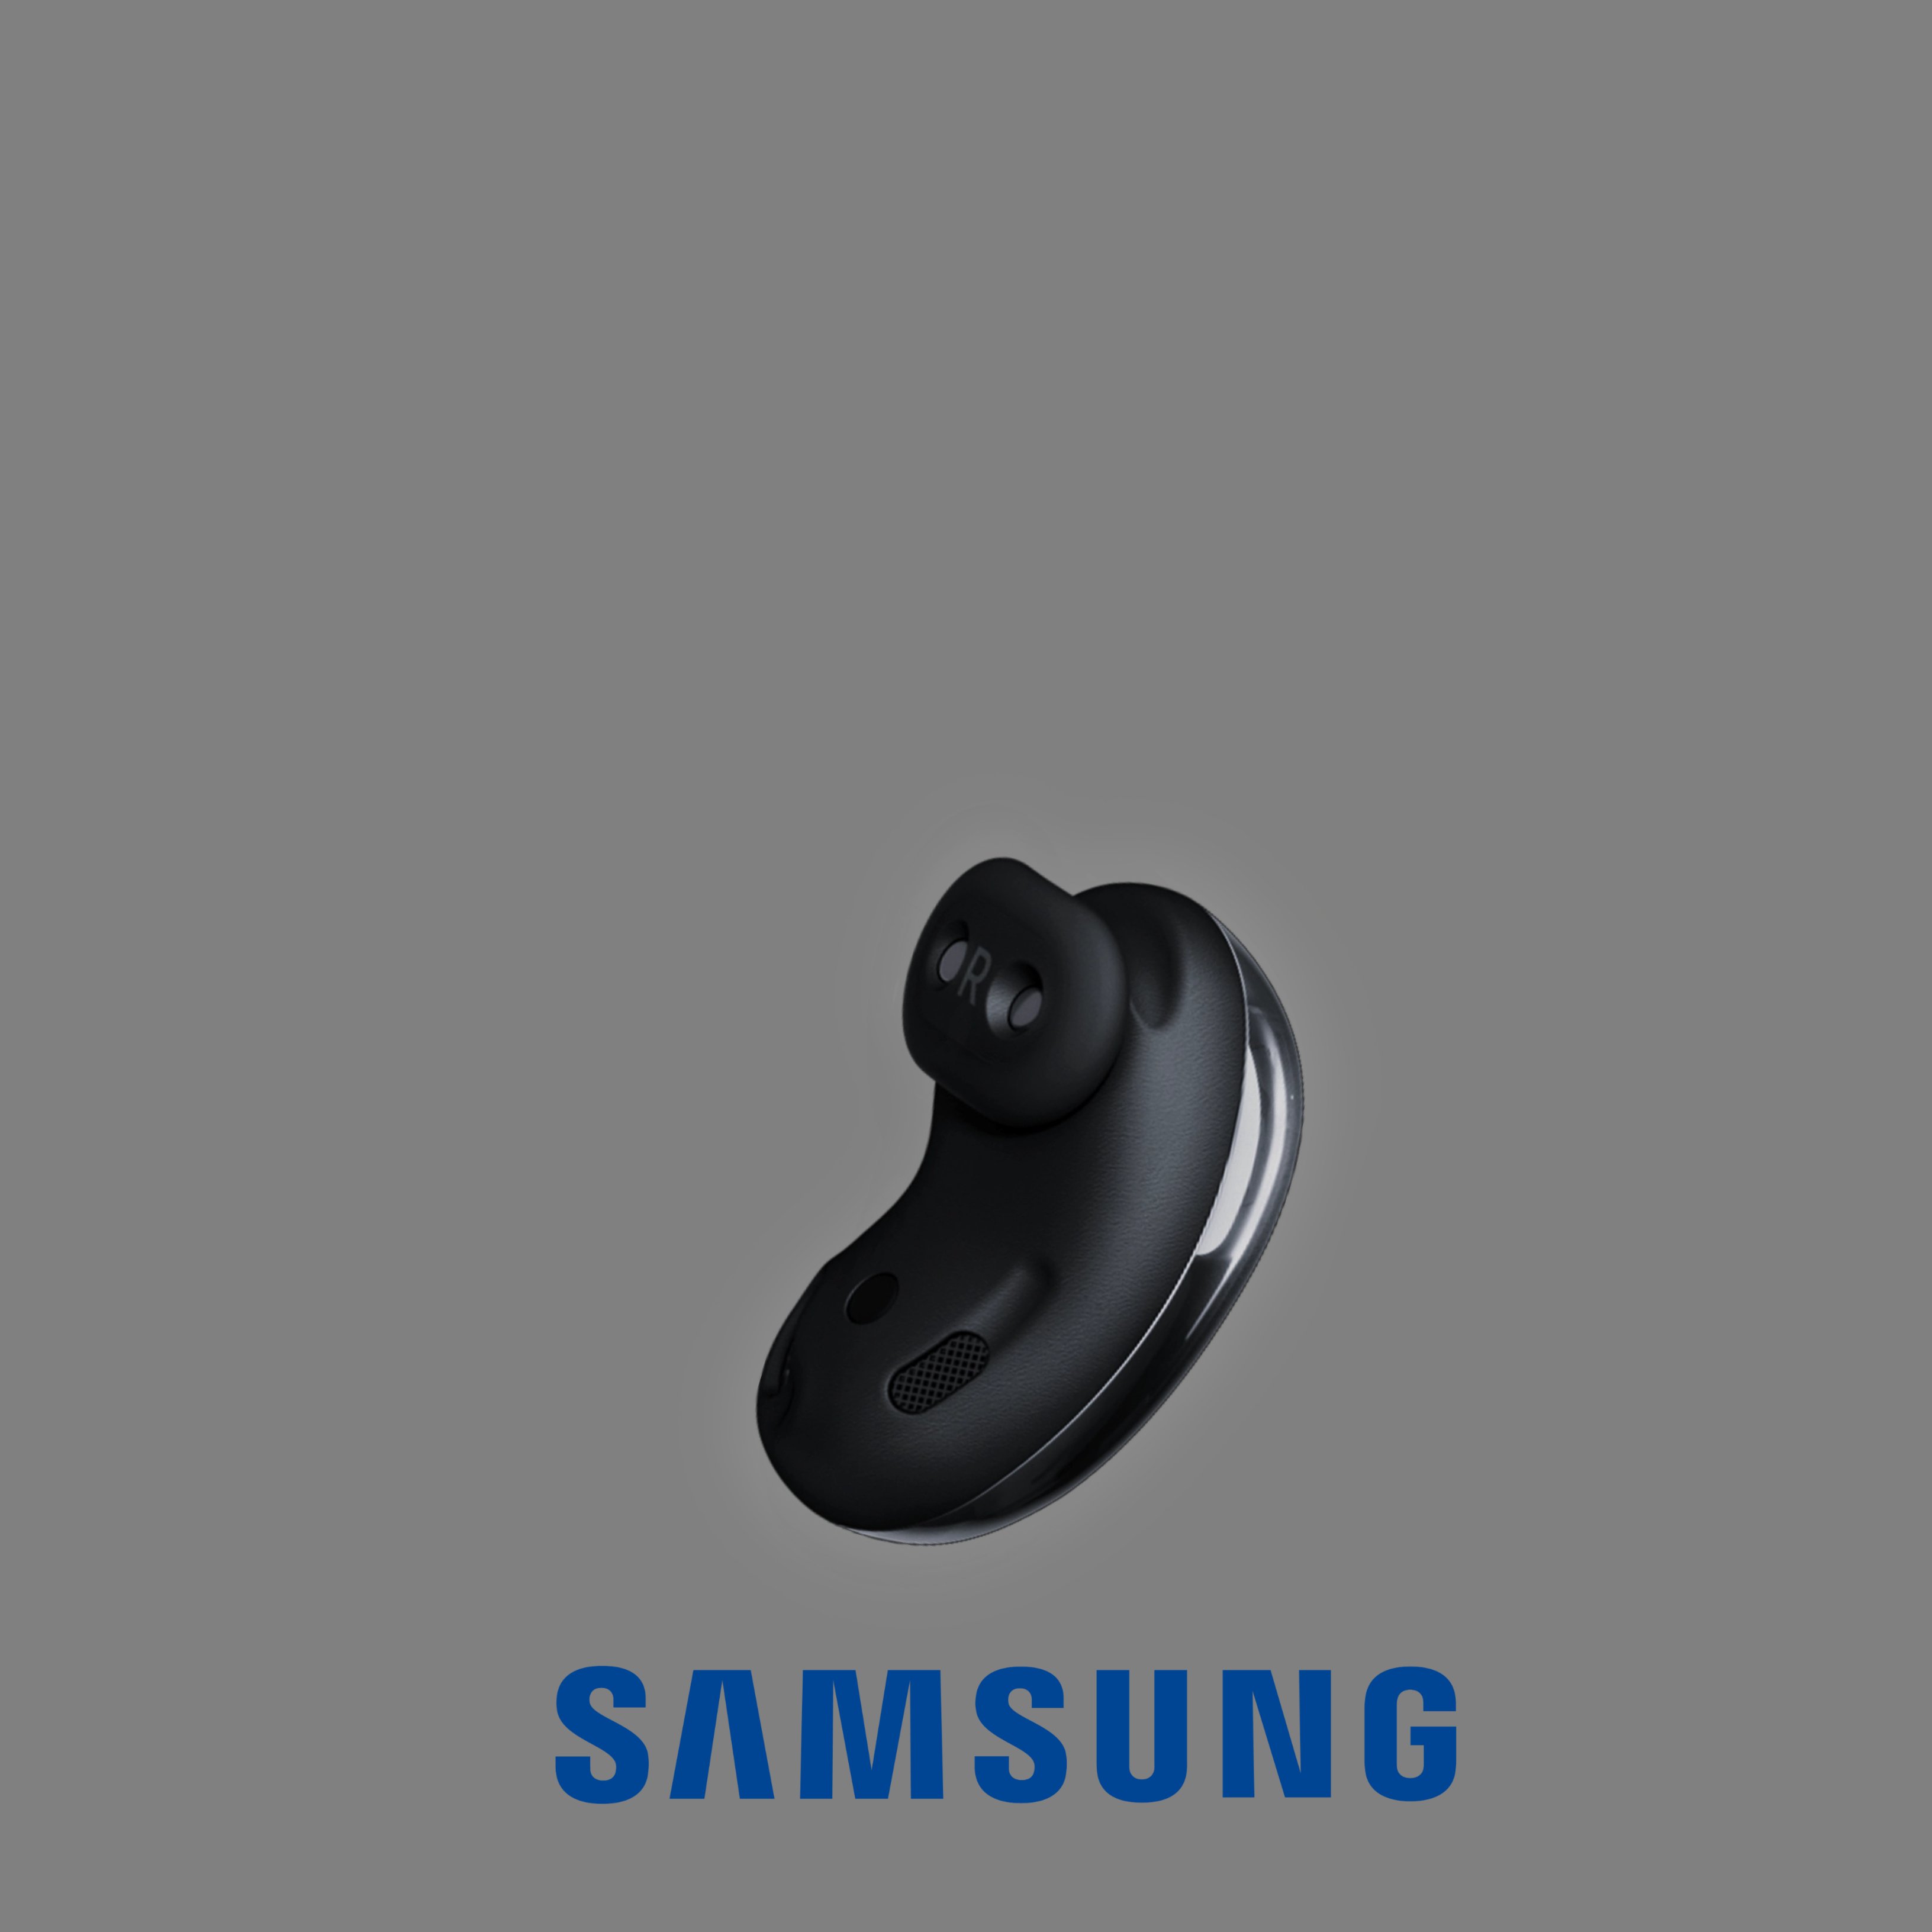 Presentados los nuevos auriculares Samsung Galaxy Buds Live